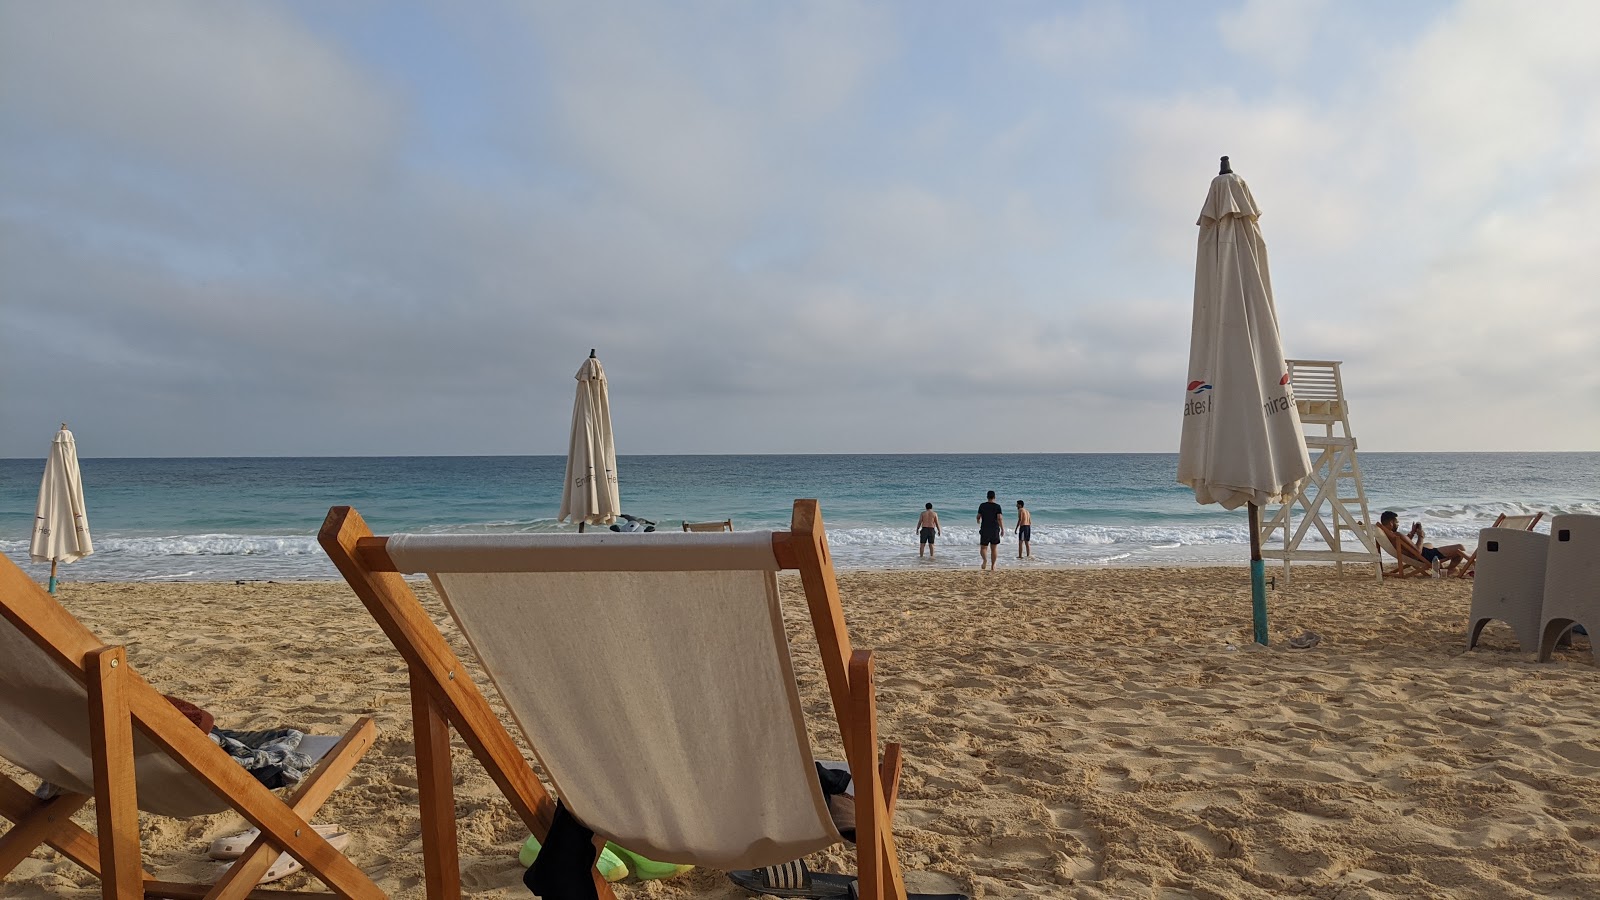 Fotografie cu Emirates Heights Beach - locul popular printre cunoscătorii de relaxare